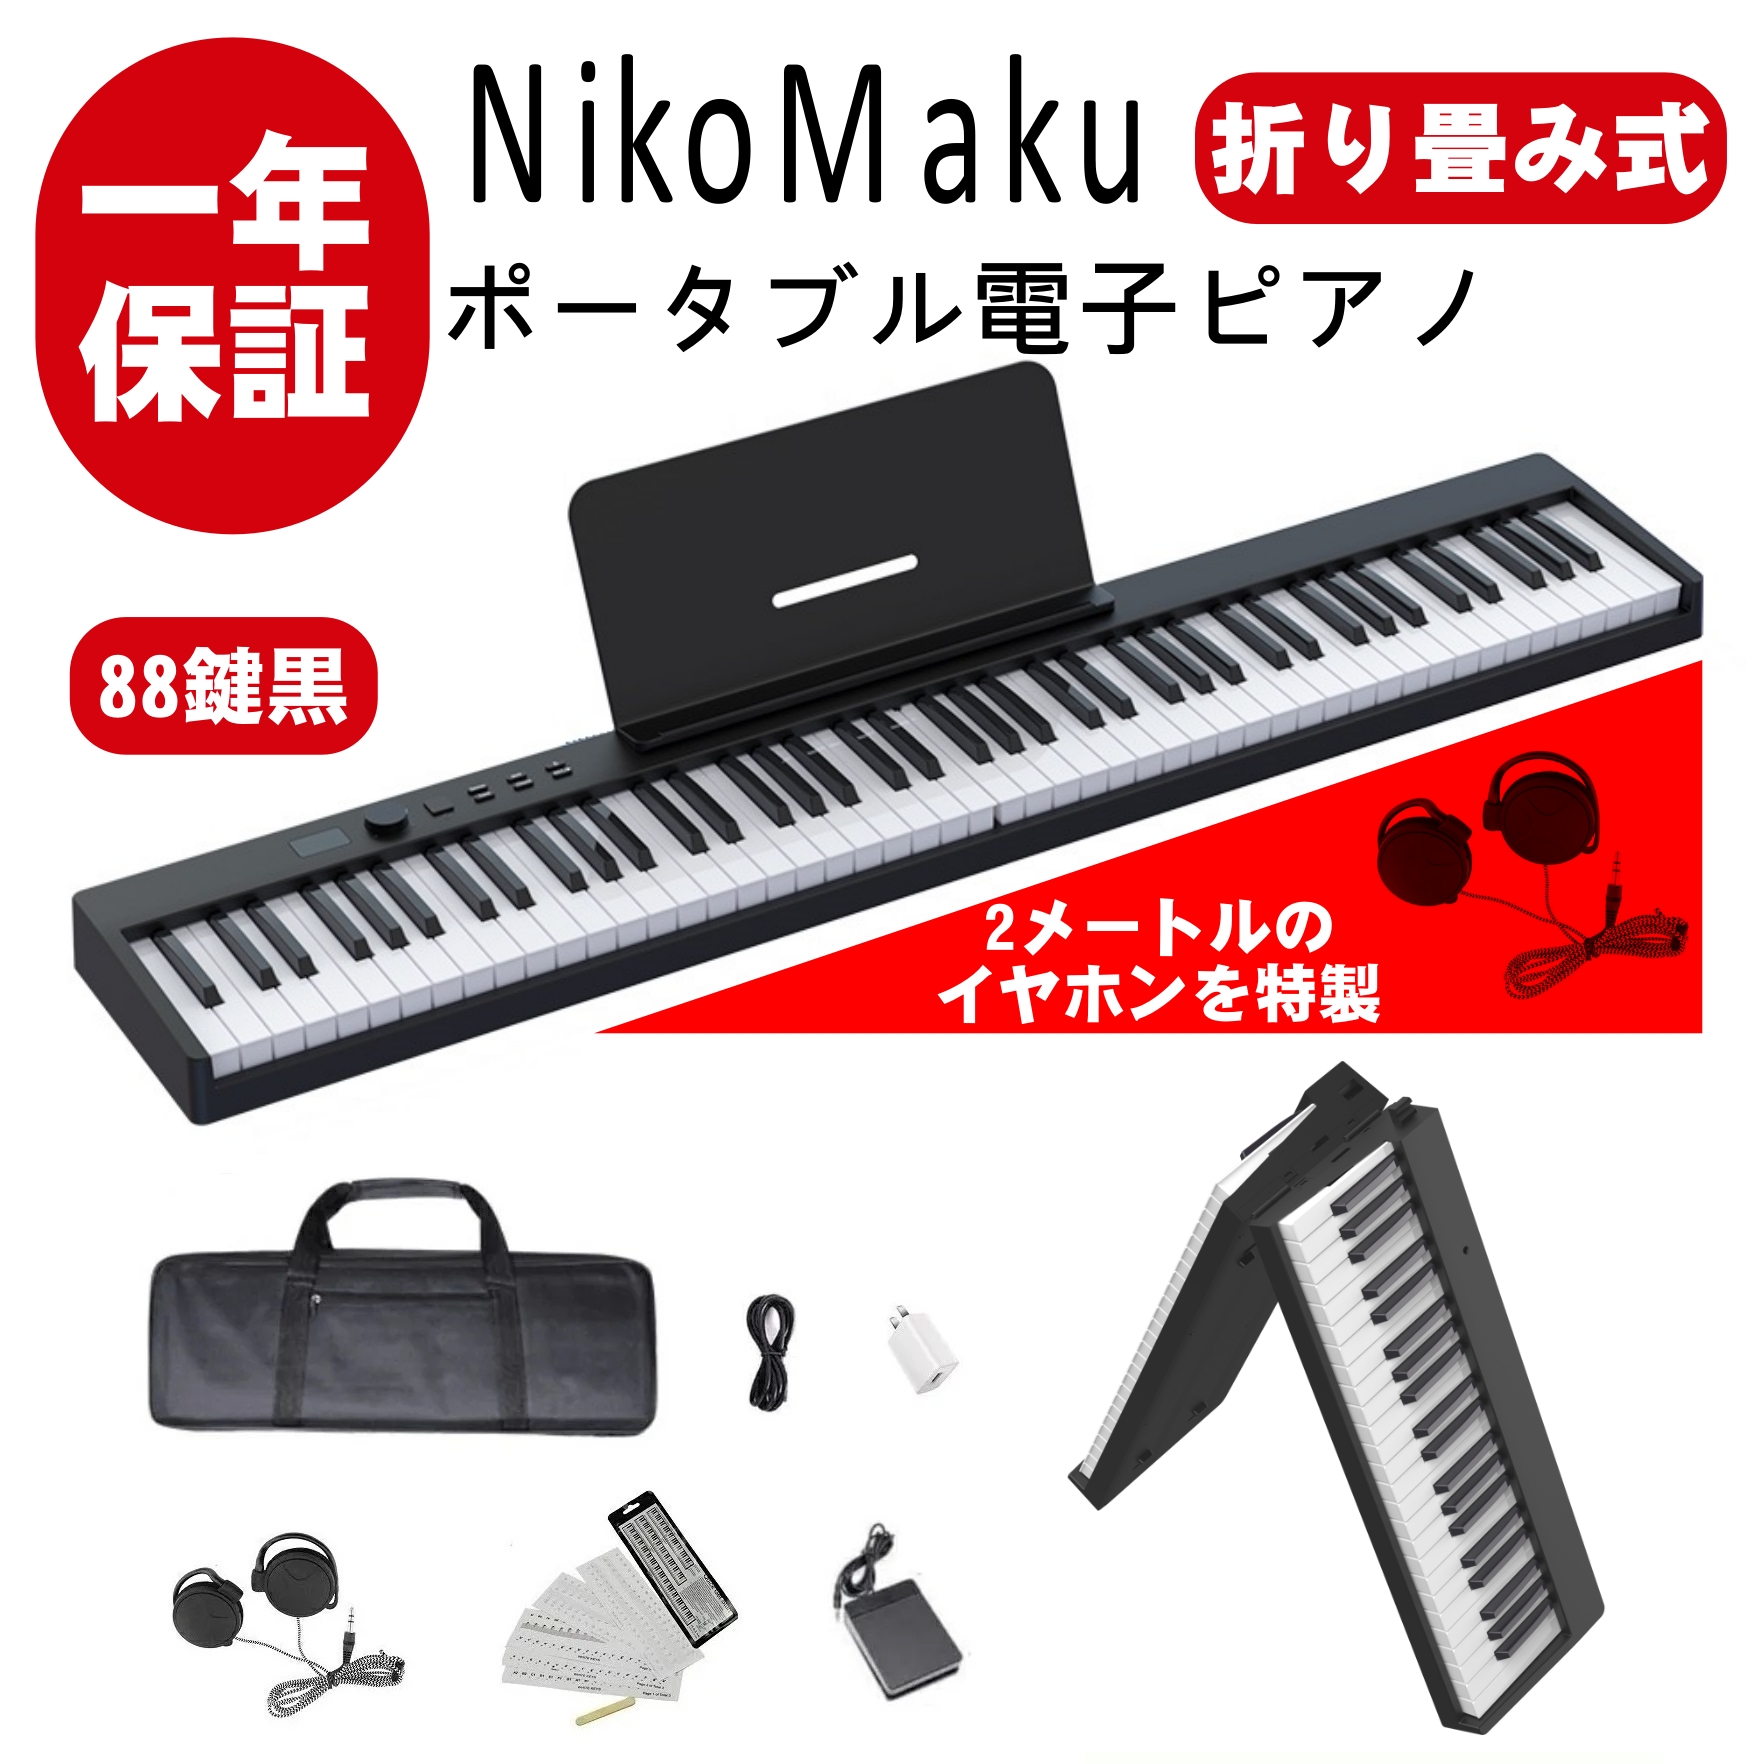 ファッションセール ニコマク 白 折り畳み式 88鍵盤 電子ピアノ 鍵盤楽器